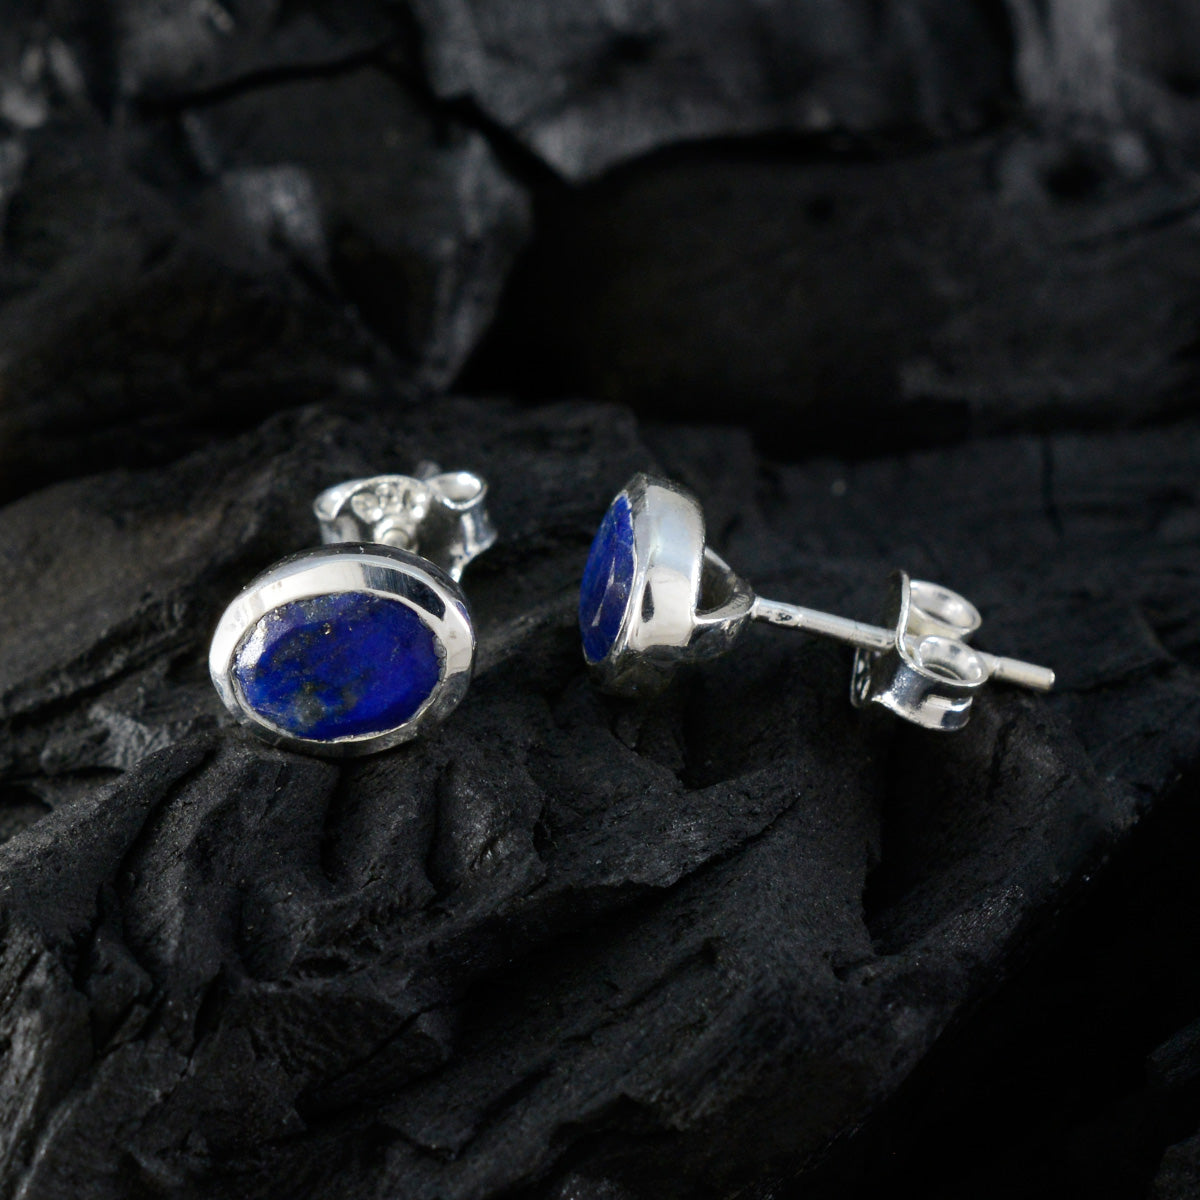 riyo bonny 925 sterling silver örhänge för kvinnor lapis lazuli örhänge infattning blå örhänge stift örhänge